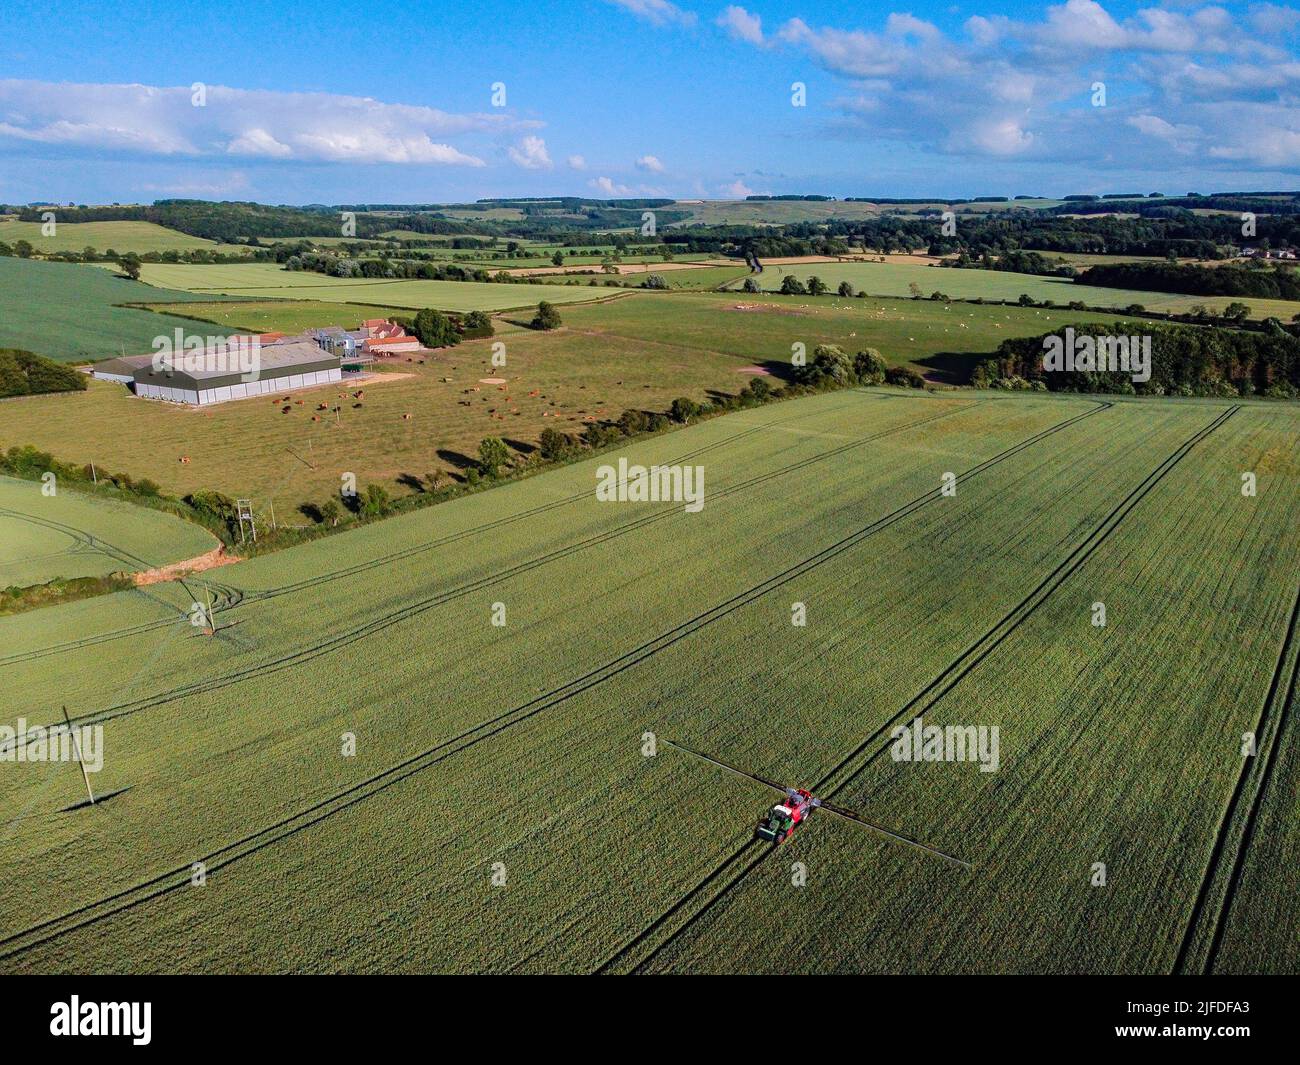 Vista aerea di un contadino 'tramlines' in un campo di mais nella campagna del North Yorkshire nel nord-est dell'Inghilterra. Foto Stock